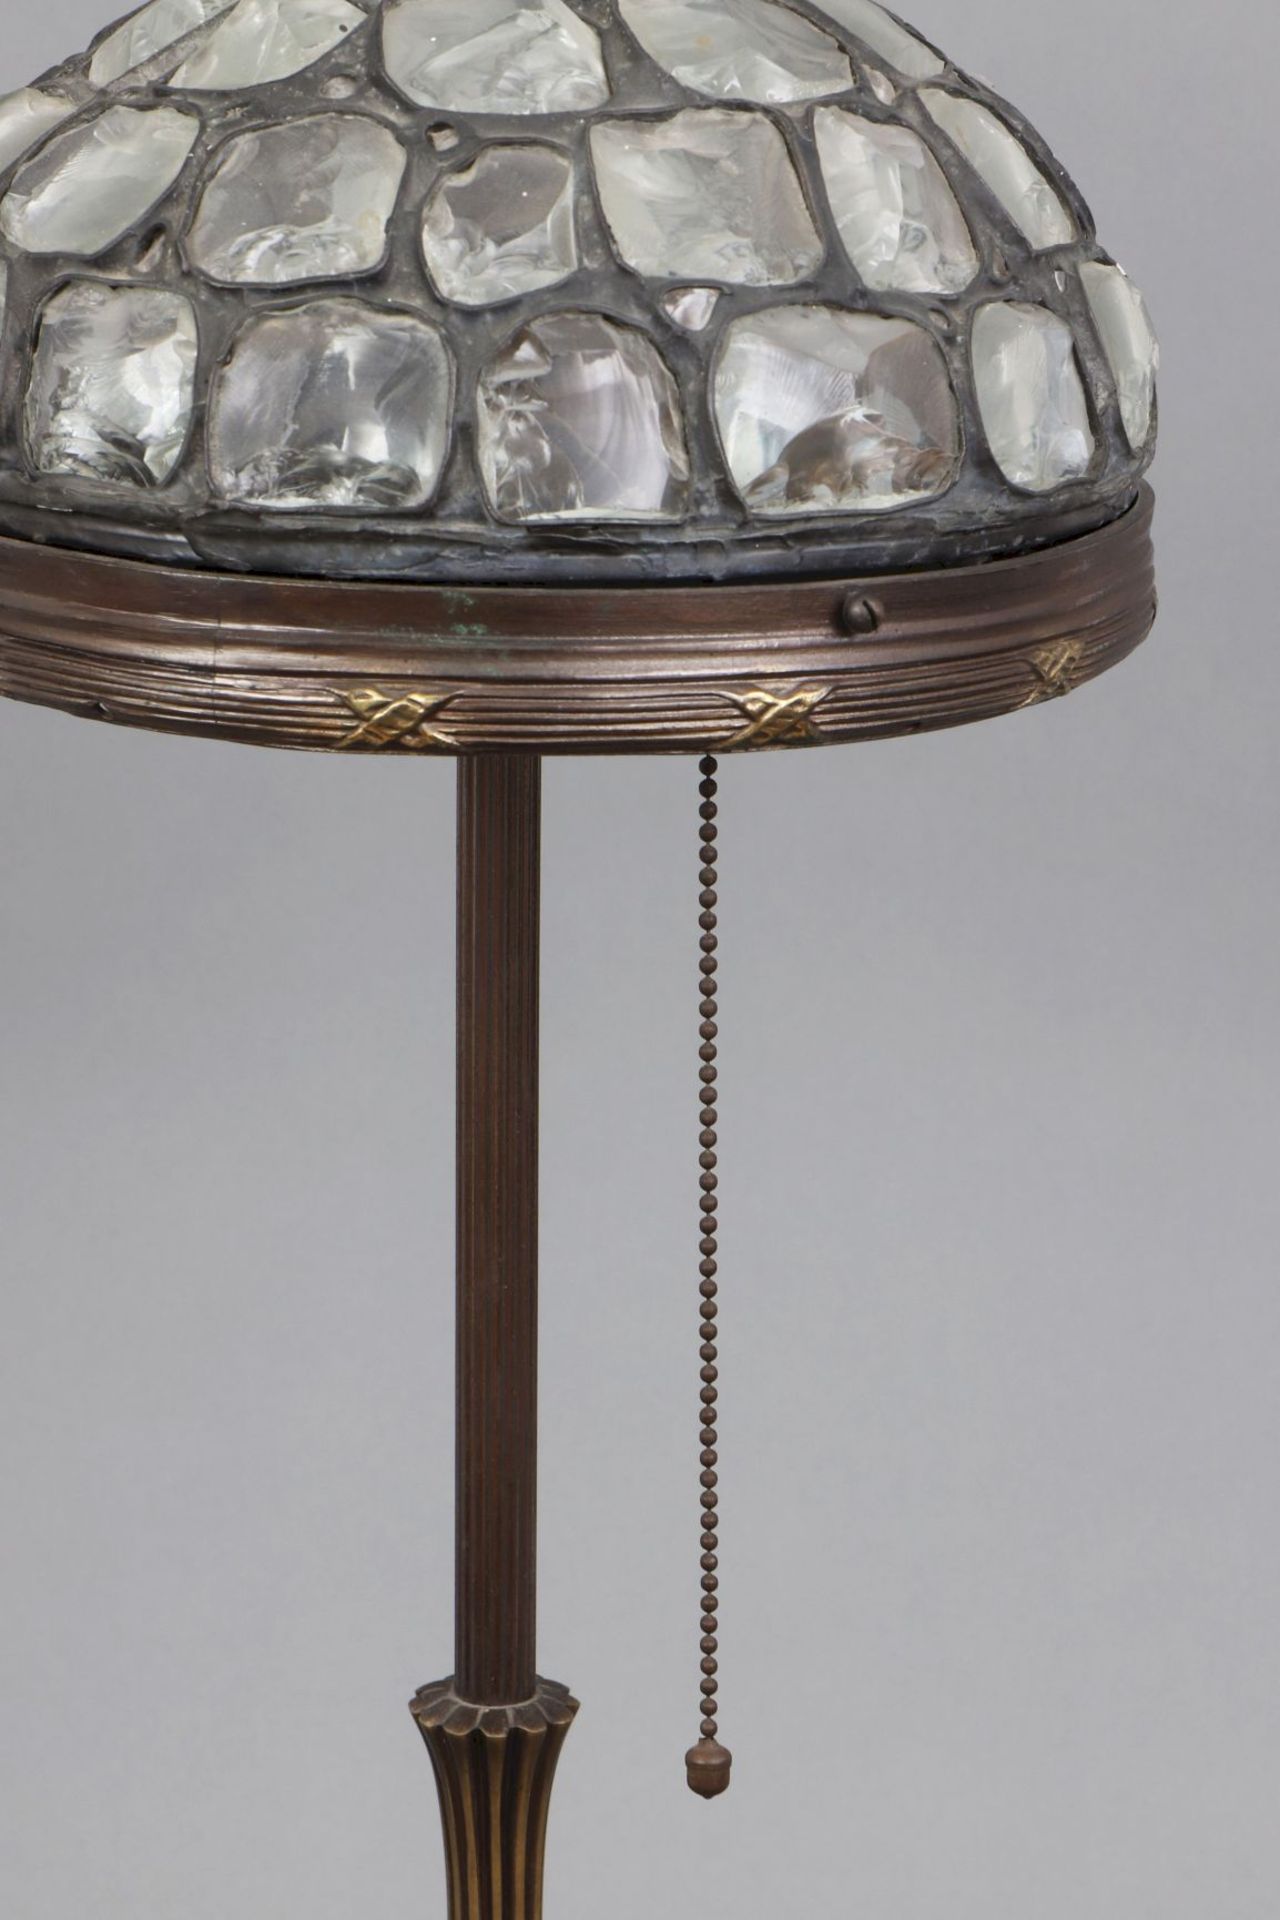 Jugendstil Tischlampe mit kuppelförmigem Glasmosaik-Schirm - Image 2 of 3